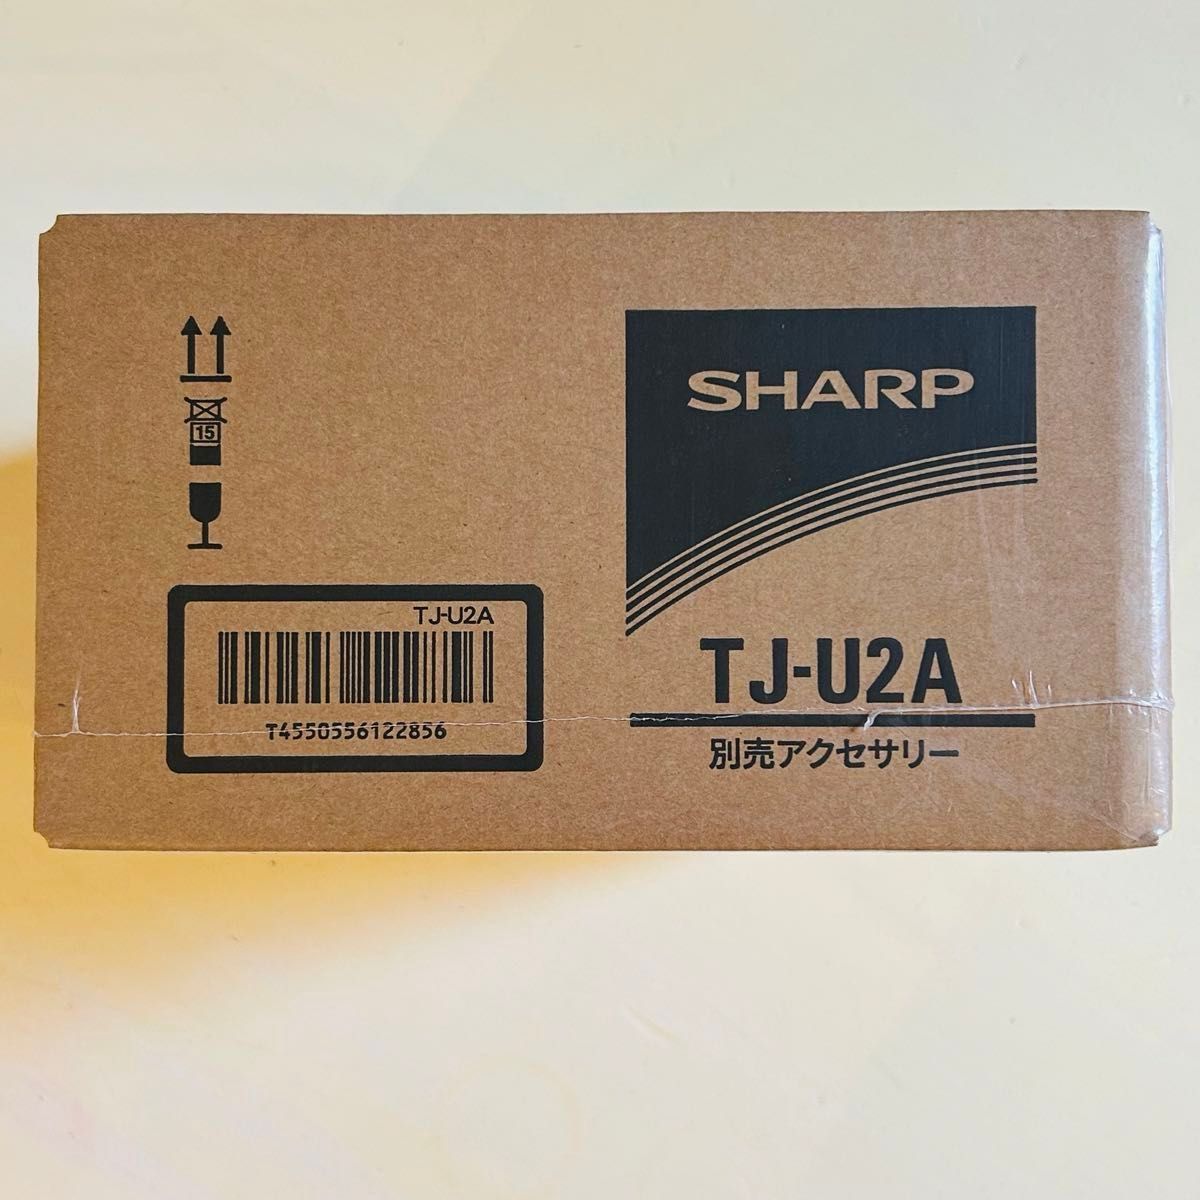 【新品未使用未開封】シャープ もっとクック SHARP ホットクック専用 アクセサリー TJ-U2A 送料無料